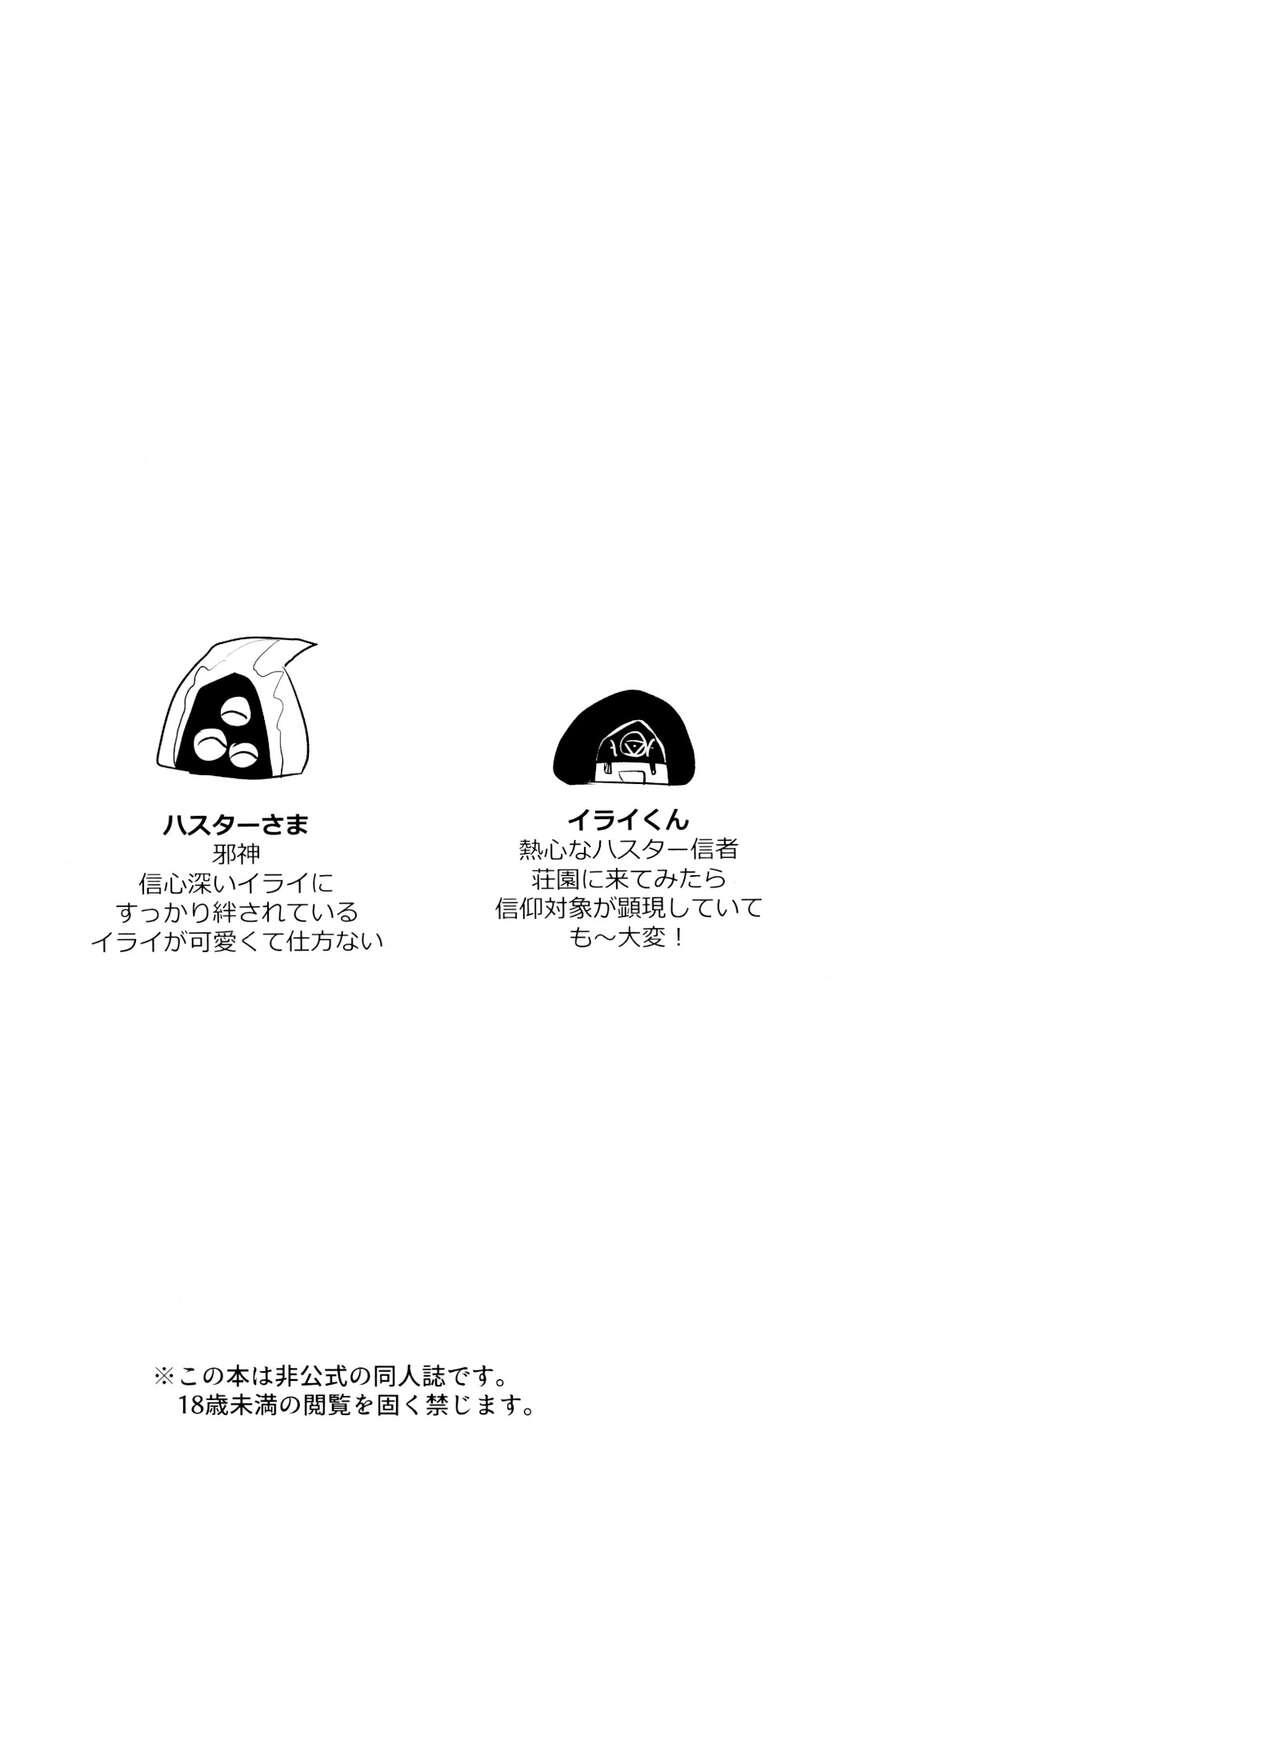 Piroca Anata ni go hōshi sa sete kudasai - Identity v Group - Picture 2